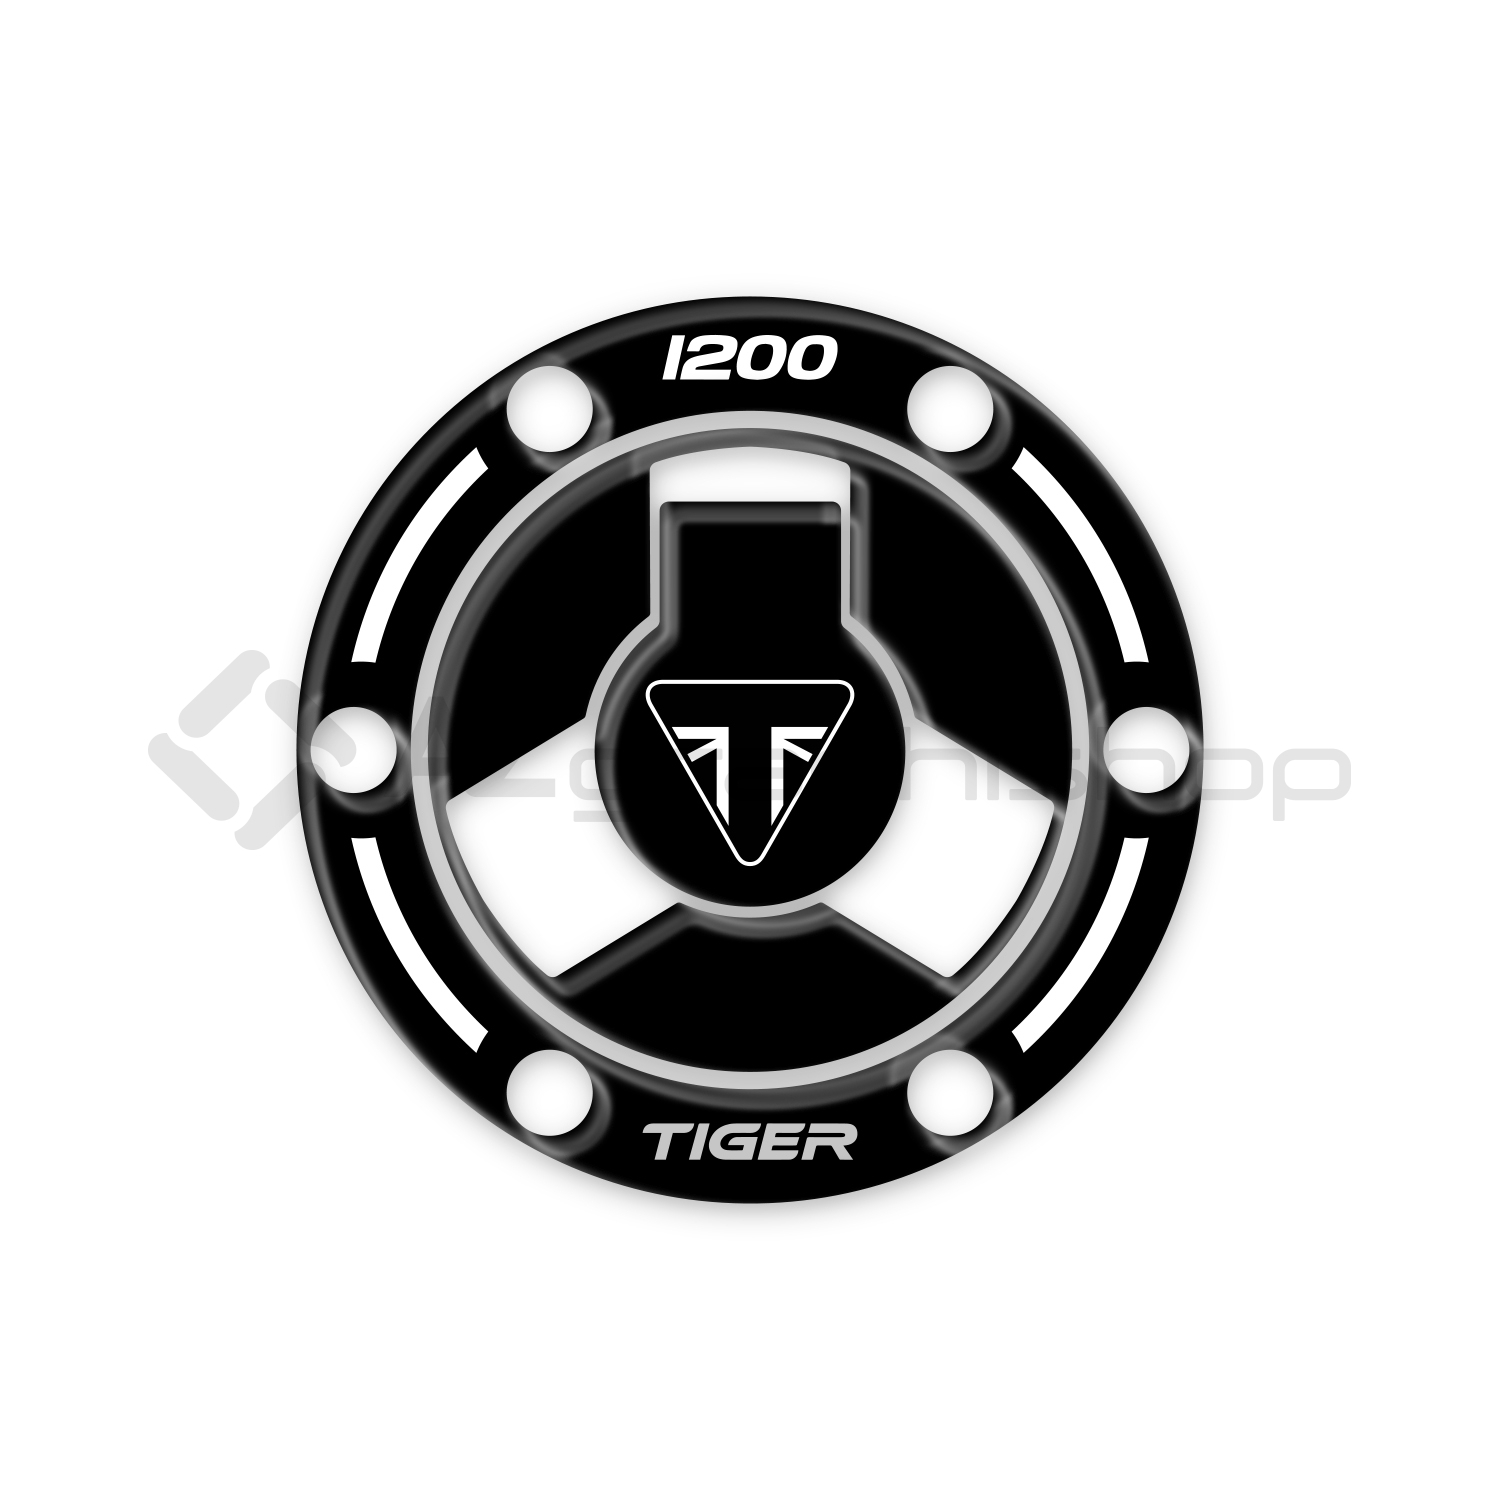 Protezione Tappo Benzina per Triumph Tiger 1200 XR XRT XRX XCX XCA 2018-2021 GP-641(NWS)